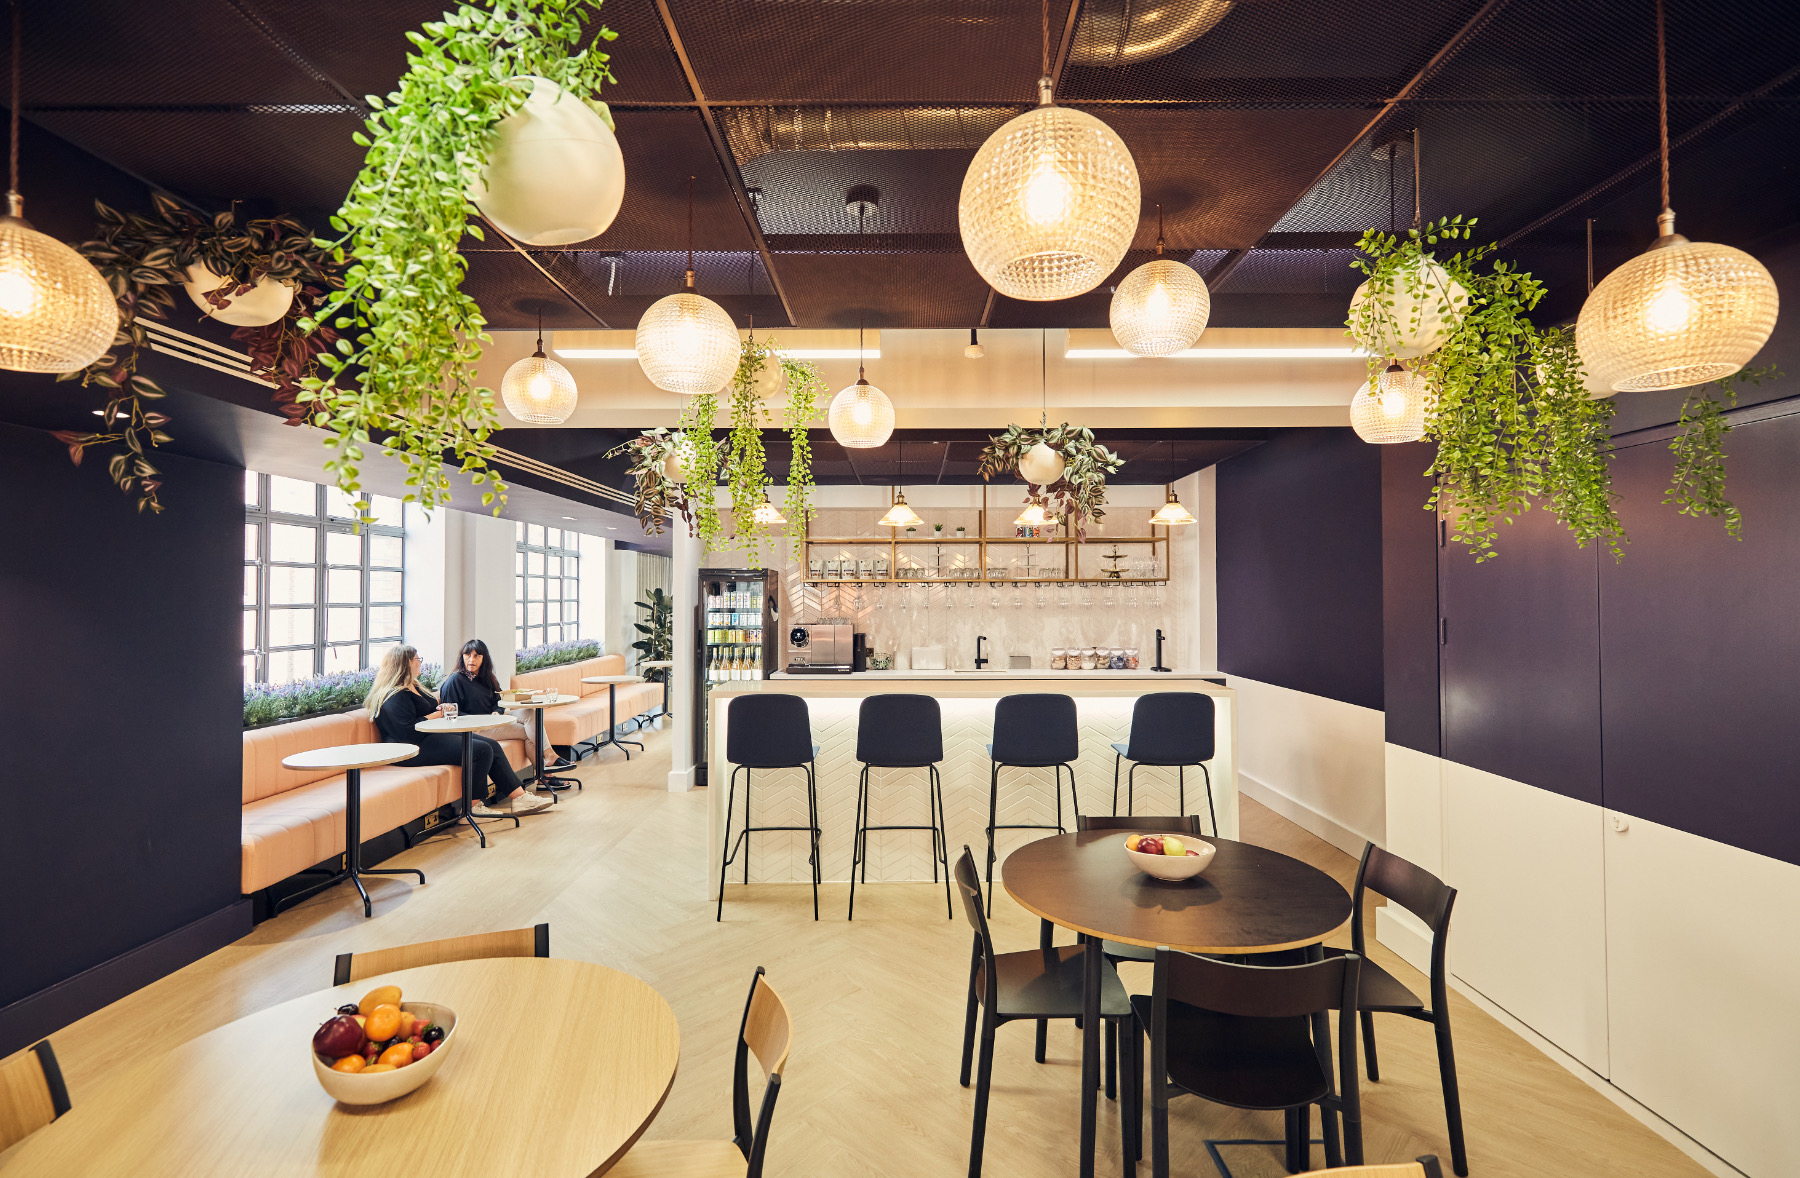 【Brandpieのオフィスデザイン】- イギリス, ロンドンのカフェスペース